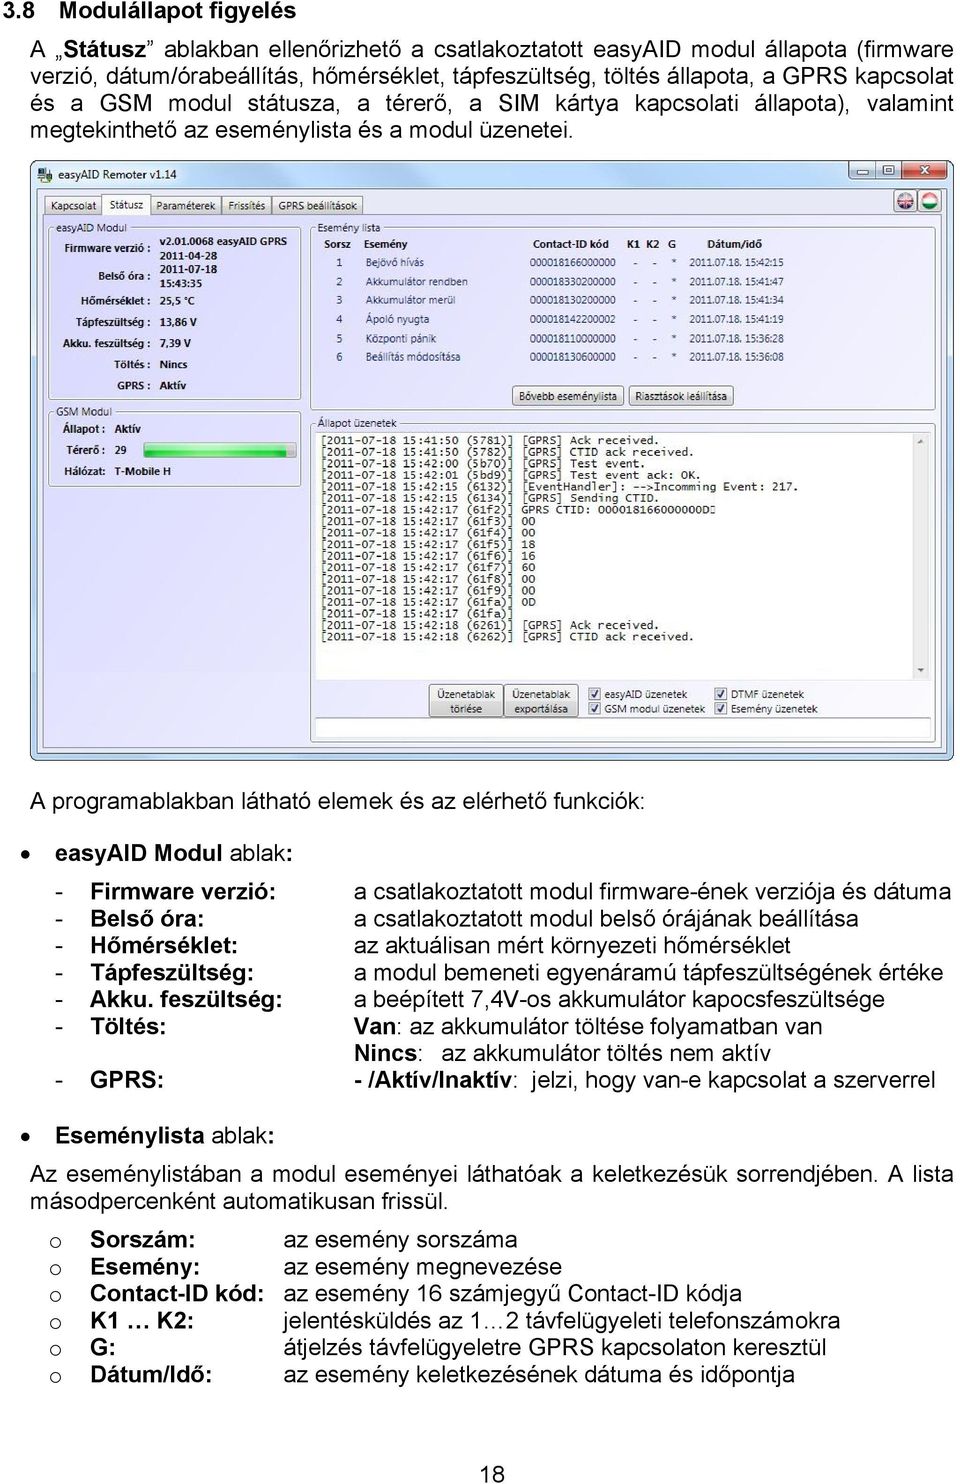 A programablakban látható elemek és az elérhető funkciók: easyaid Modul ablak: - Firmware verzió: a csatlakoztatott modul firmware-ének verziója és dátuma - Belső óra: a csatlakoztatott modul belső